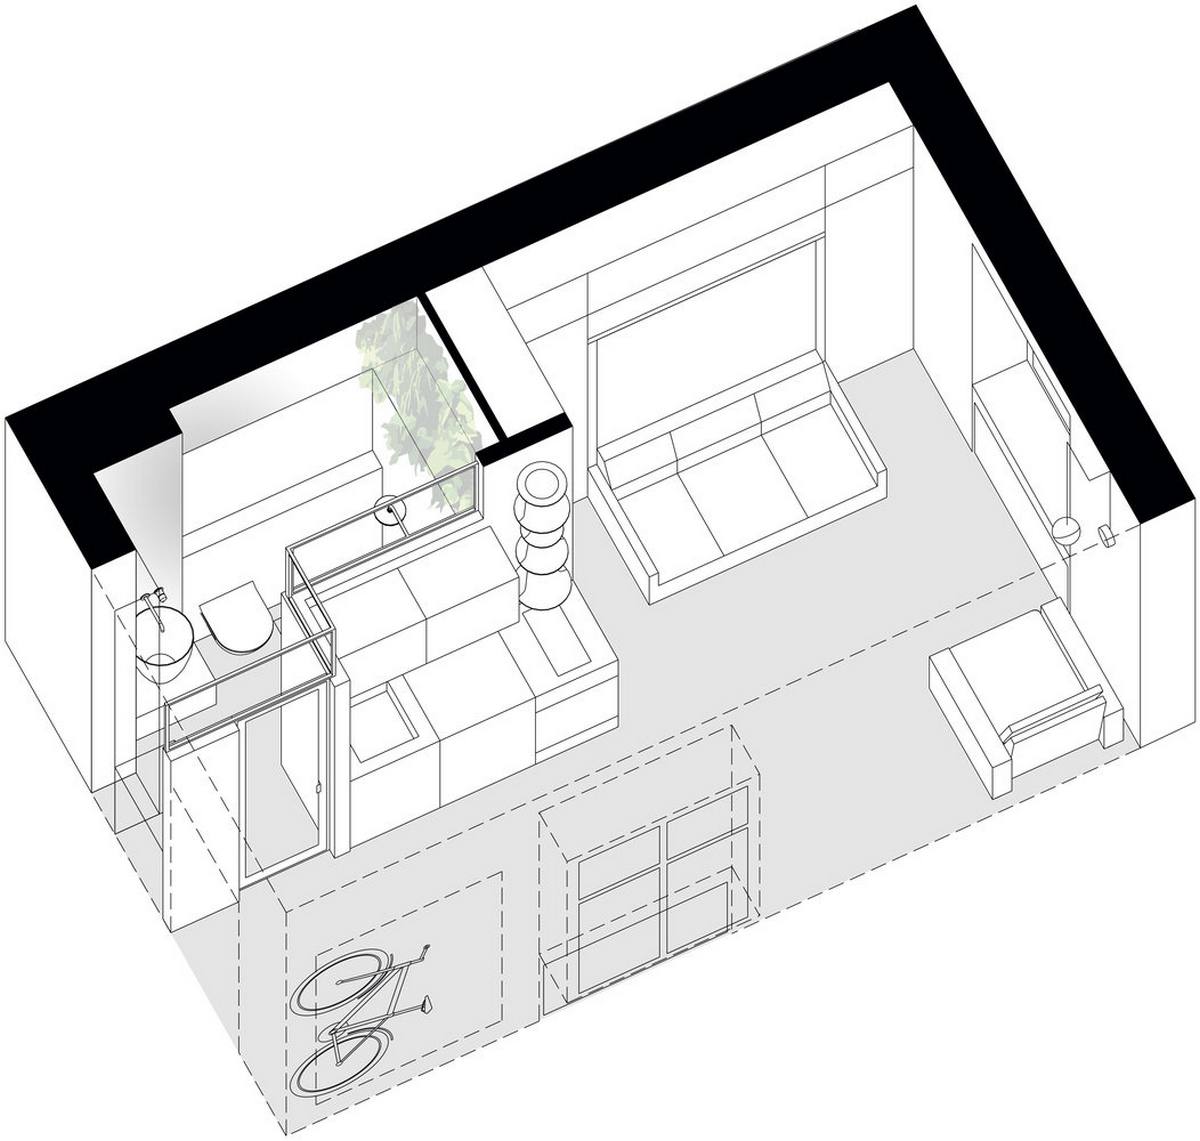 Kế hoạch sàn của căn hộ mini diện tích vỏn vẹn 18m² do Marina Pakhomova cung cấp.